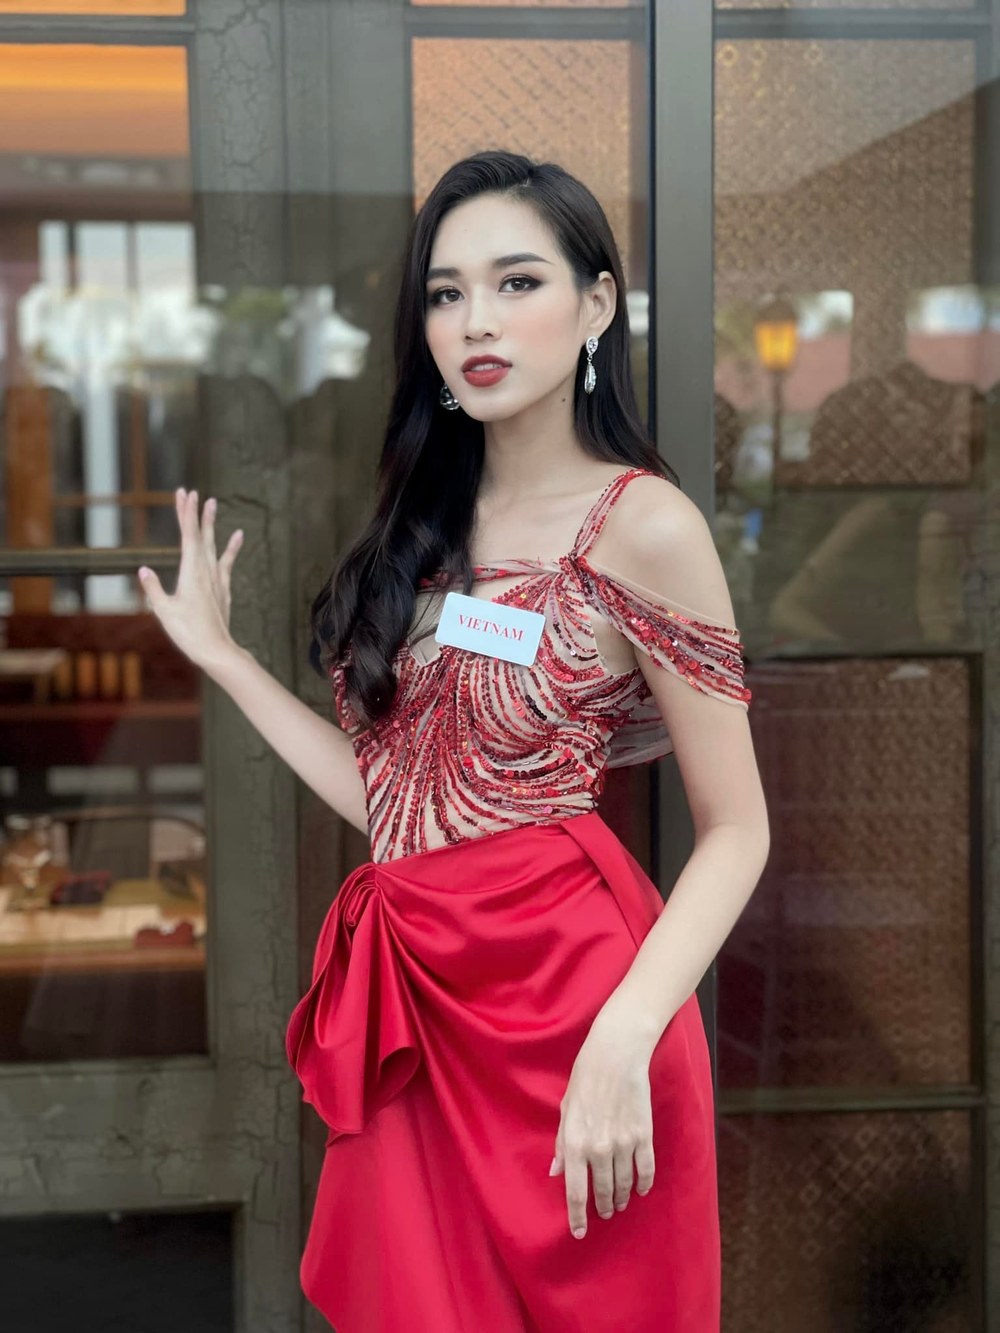  
Bằng sự cố gắng và tài năng Đỗ Thị Hà được khán giả kì vọng danh hiệu cao tại Miss World 2021. - Tin sao Viet - Tin tuc sao Viet - Scandal sao Viet - Tin tuc cua Sao - Tin cua Sao